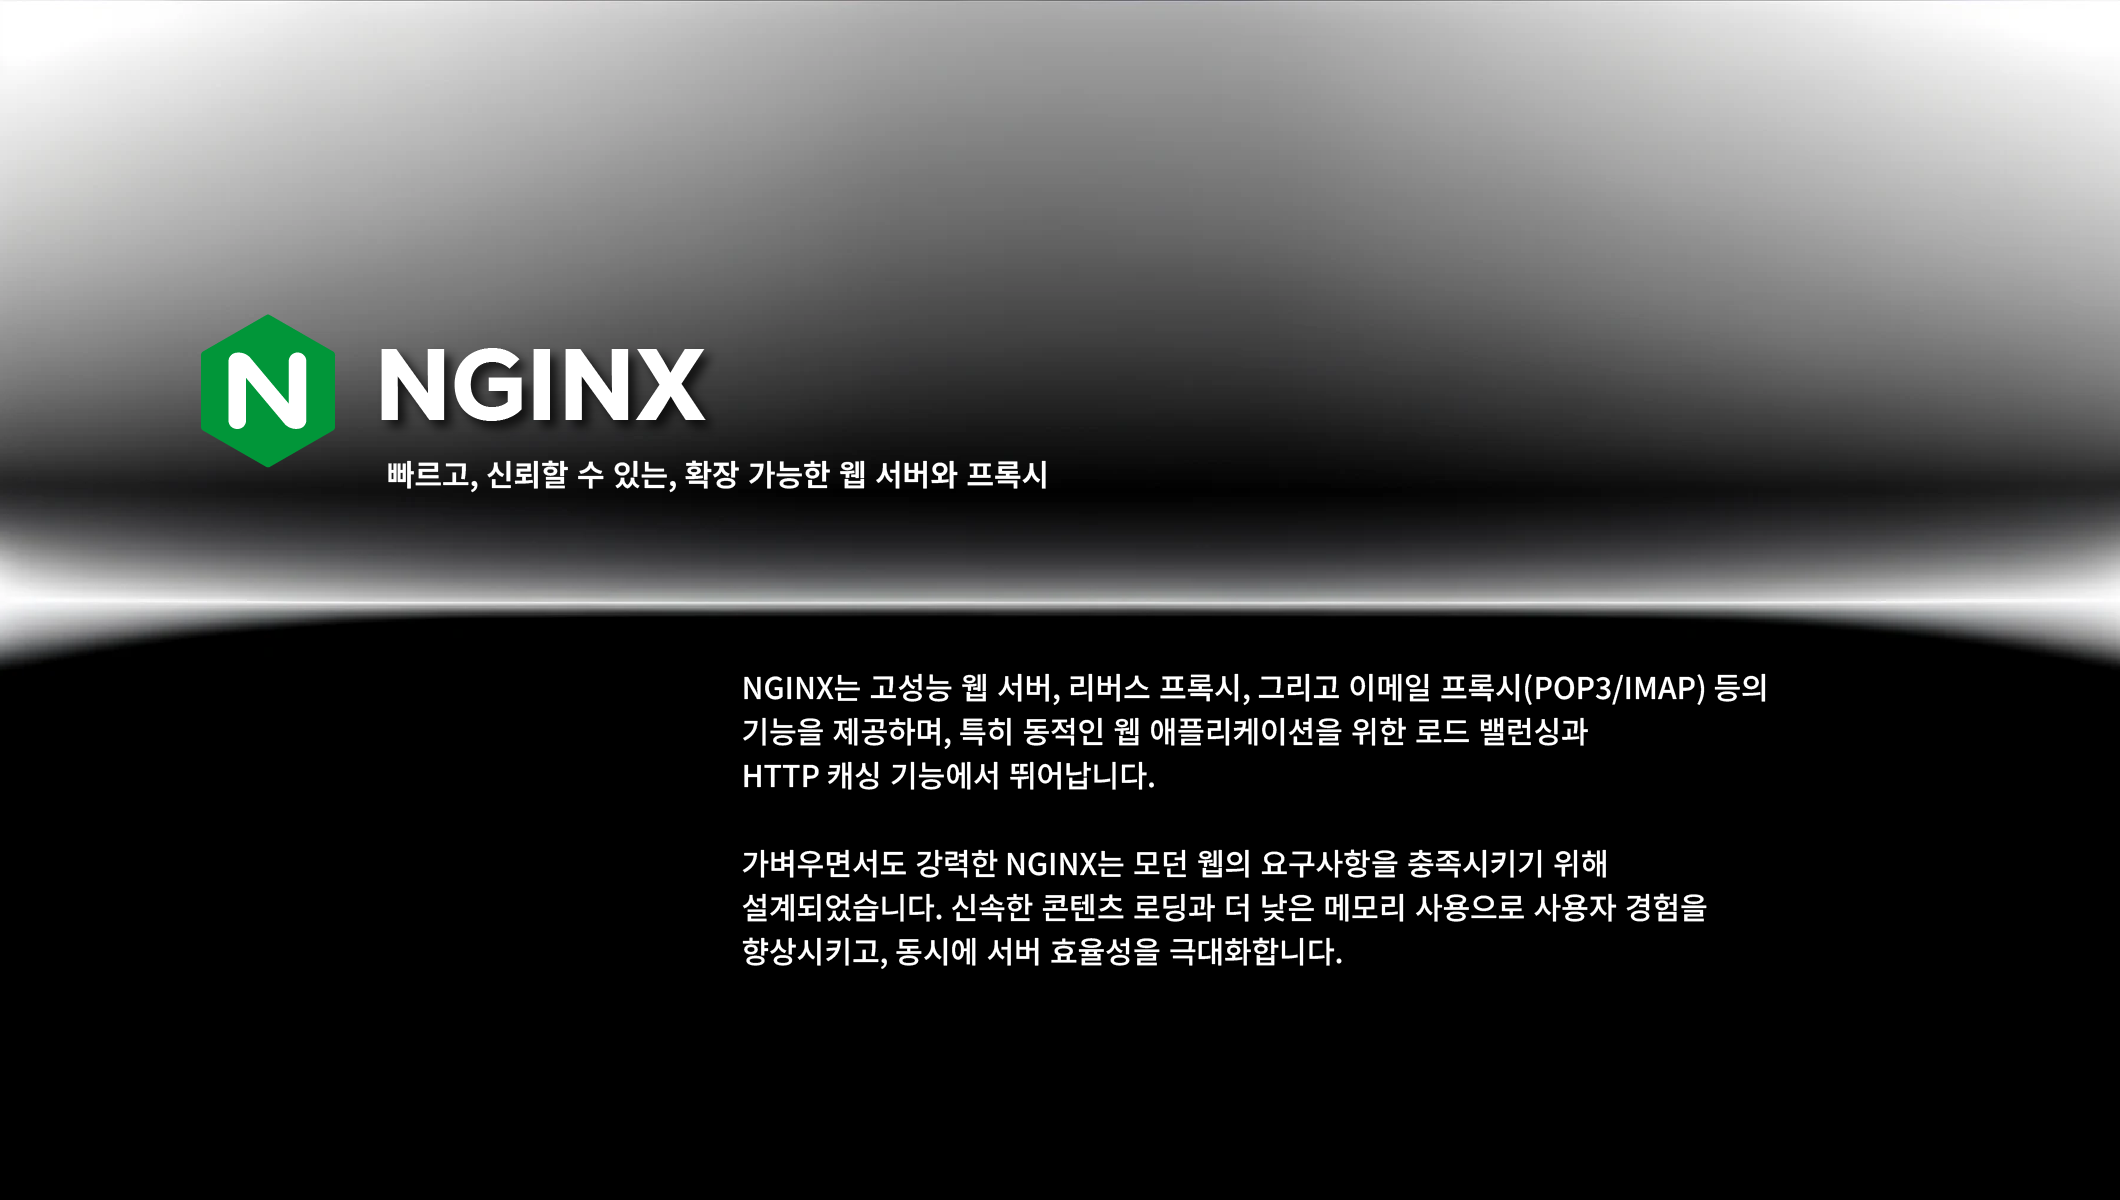 Nginx intro Image01